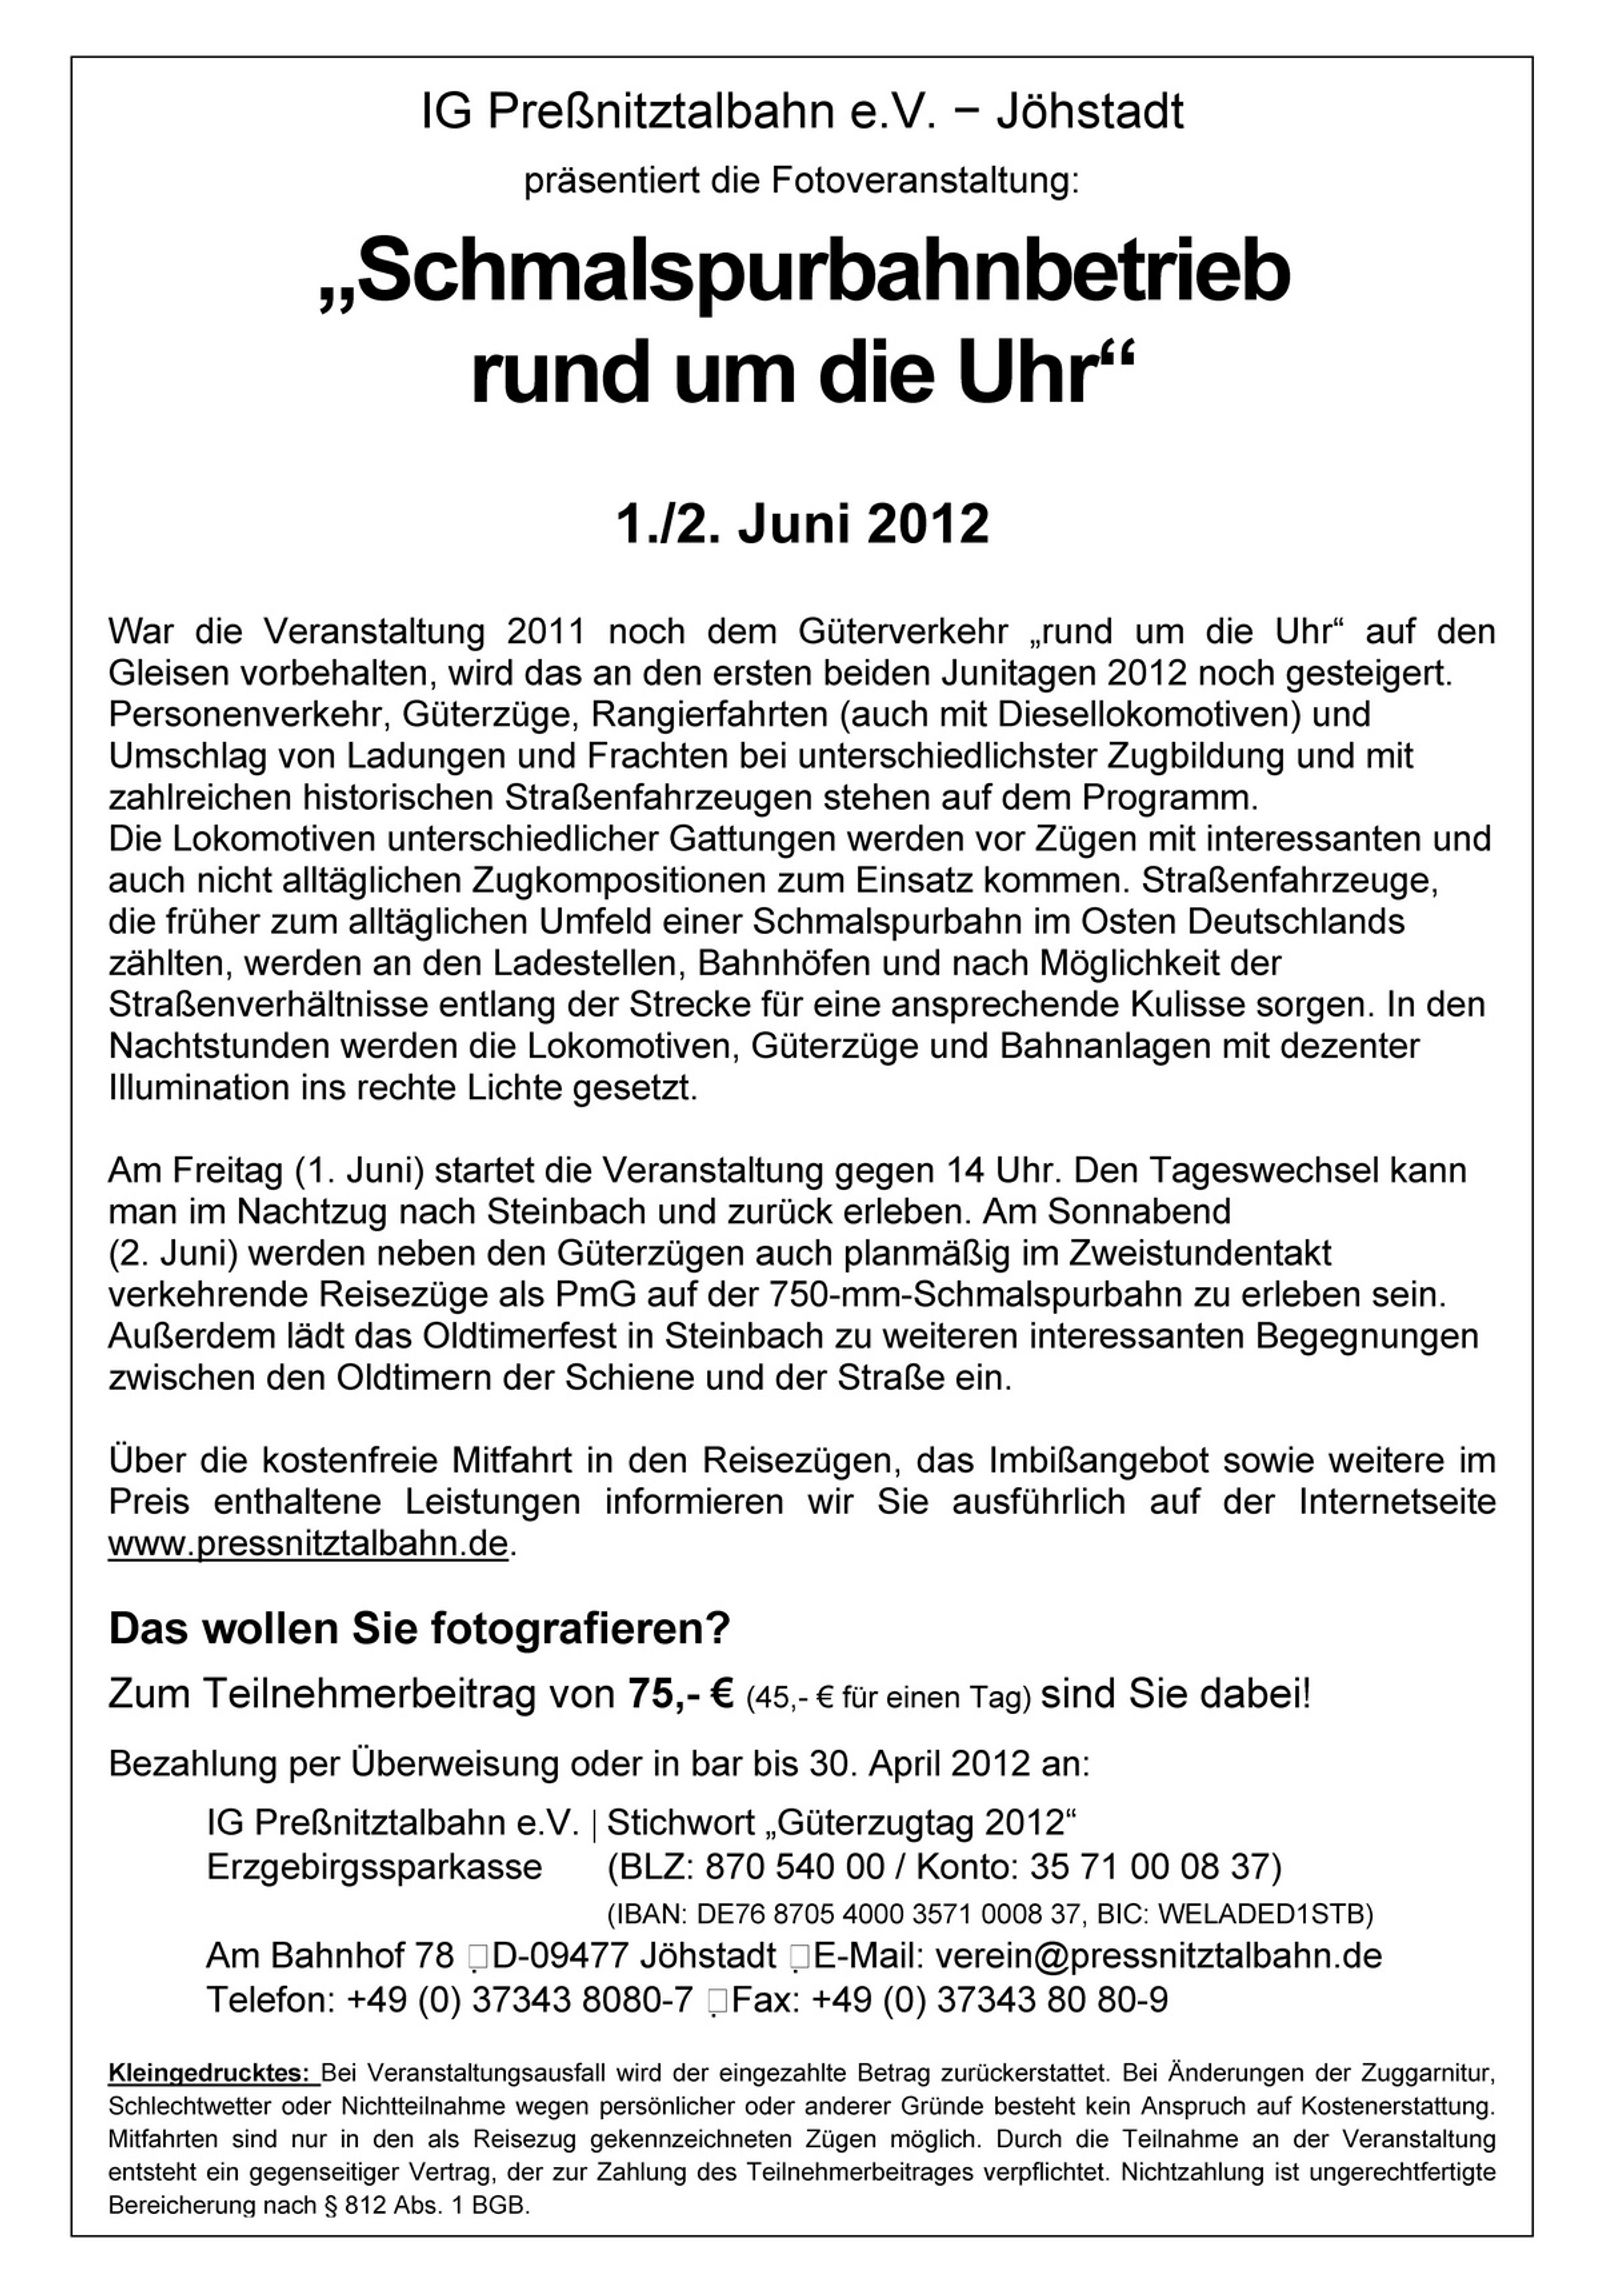 Veranstaltungsankündigung für den "Schmalspurbahnbetrieb rund um die Uhr" am 1. und 2. Juni 2012.